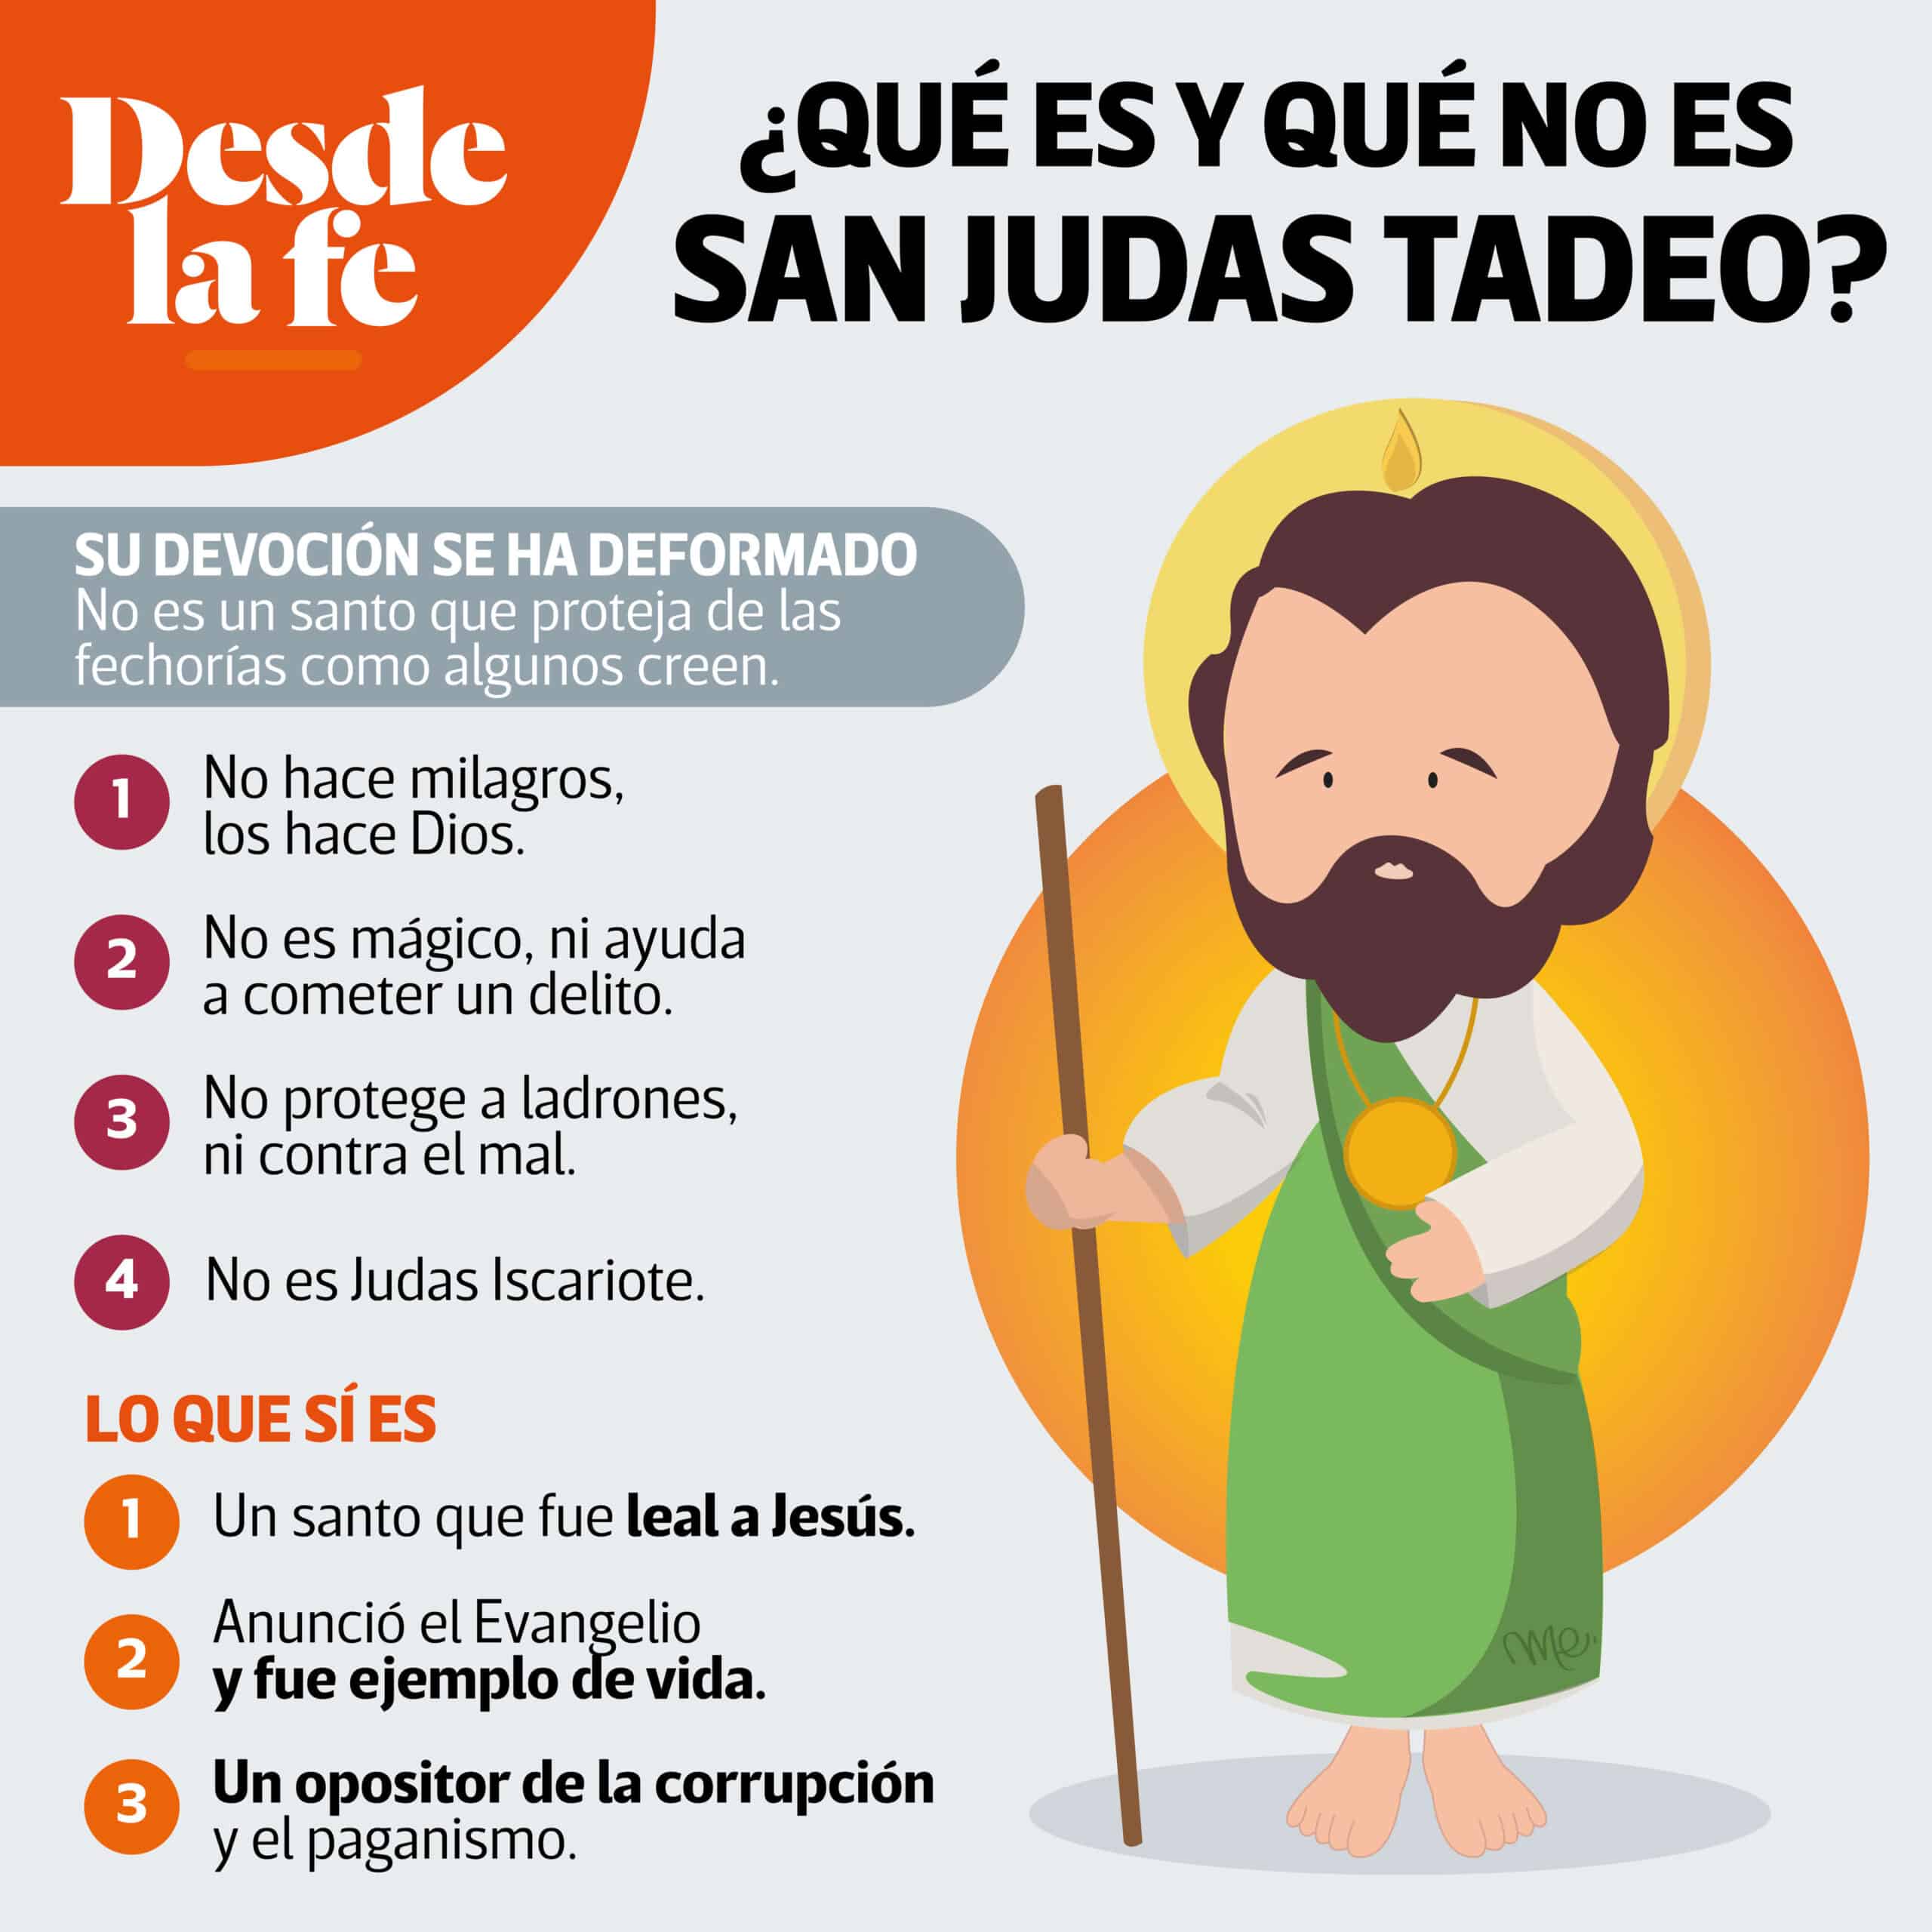 ¿Qué es y qué no es San Judas Tadeo?